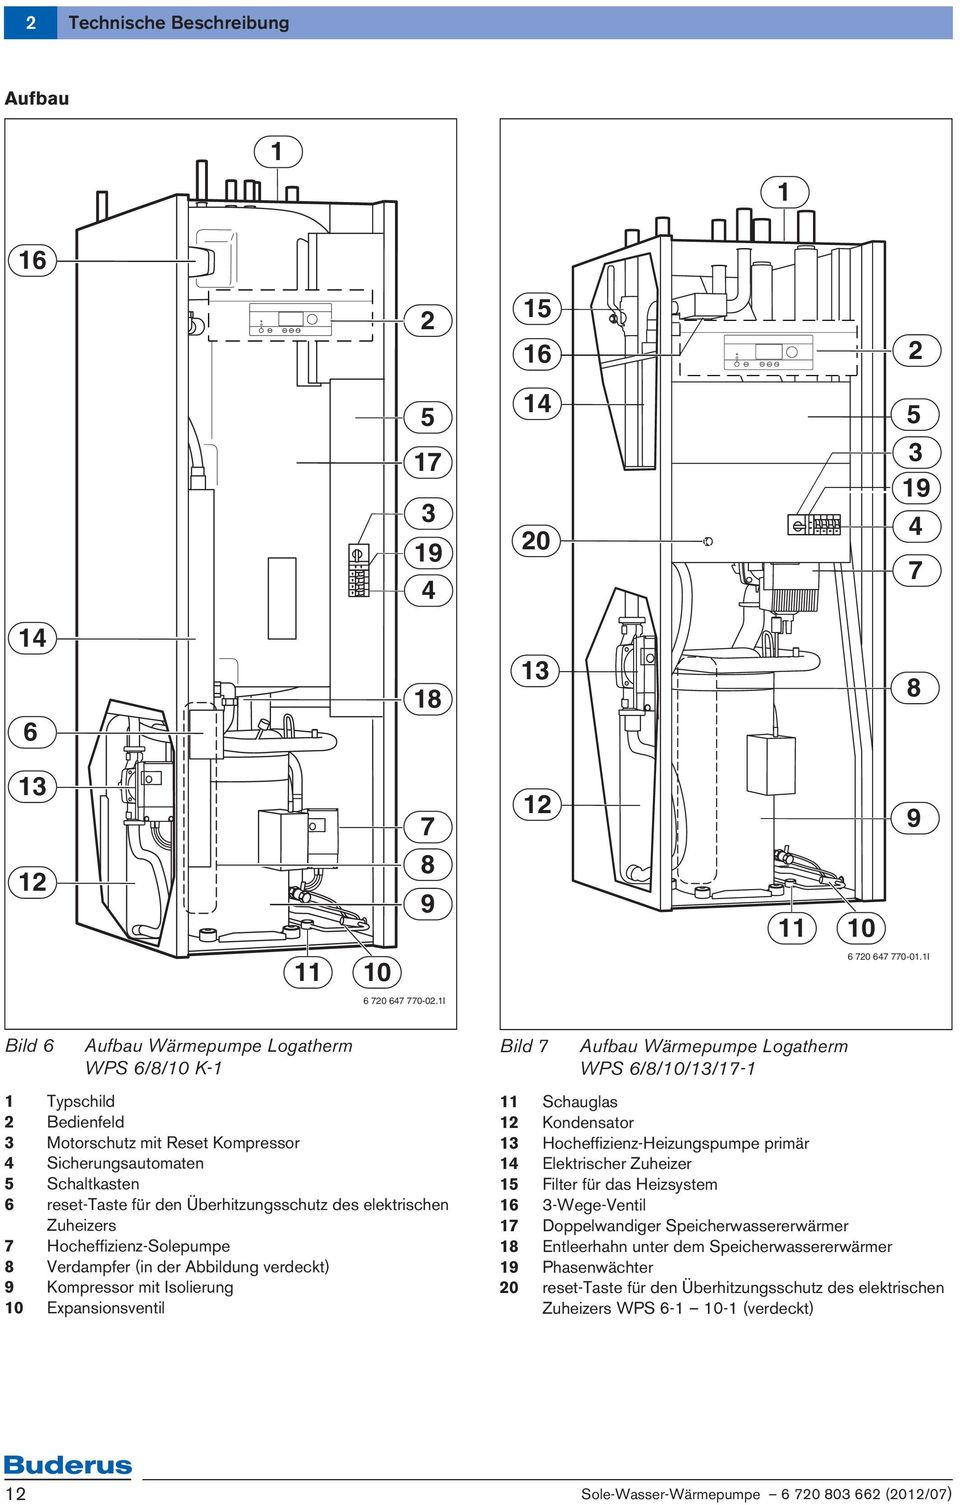 Zuheizers 7 Hocheffizienz-Solepumpe 8 Verdampfer (in der Abbildung verdeckt) 9 Kompressor mit Isolierung 0 Expansionsventil Bild 7 Aufbau Wärmepumpe Logatherm WPS 6/8/0//7- Schauglas Kondensator